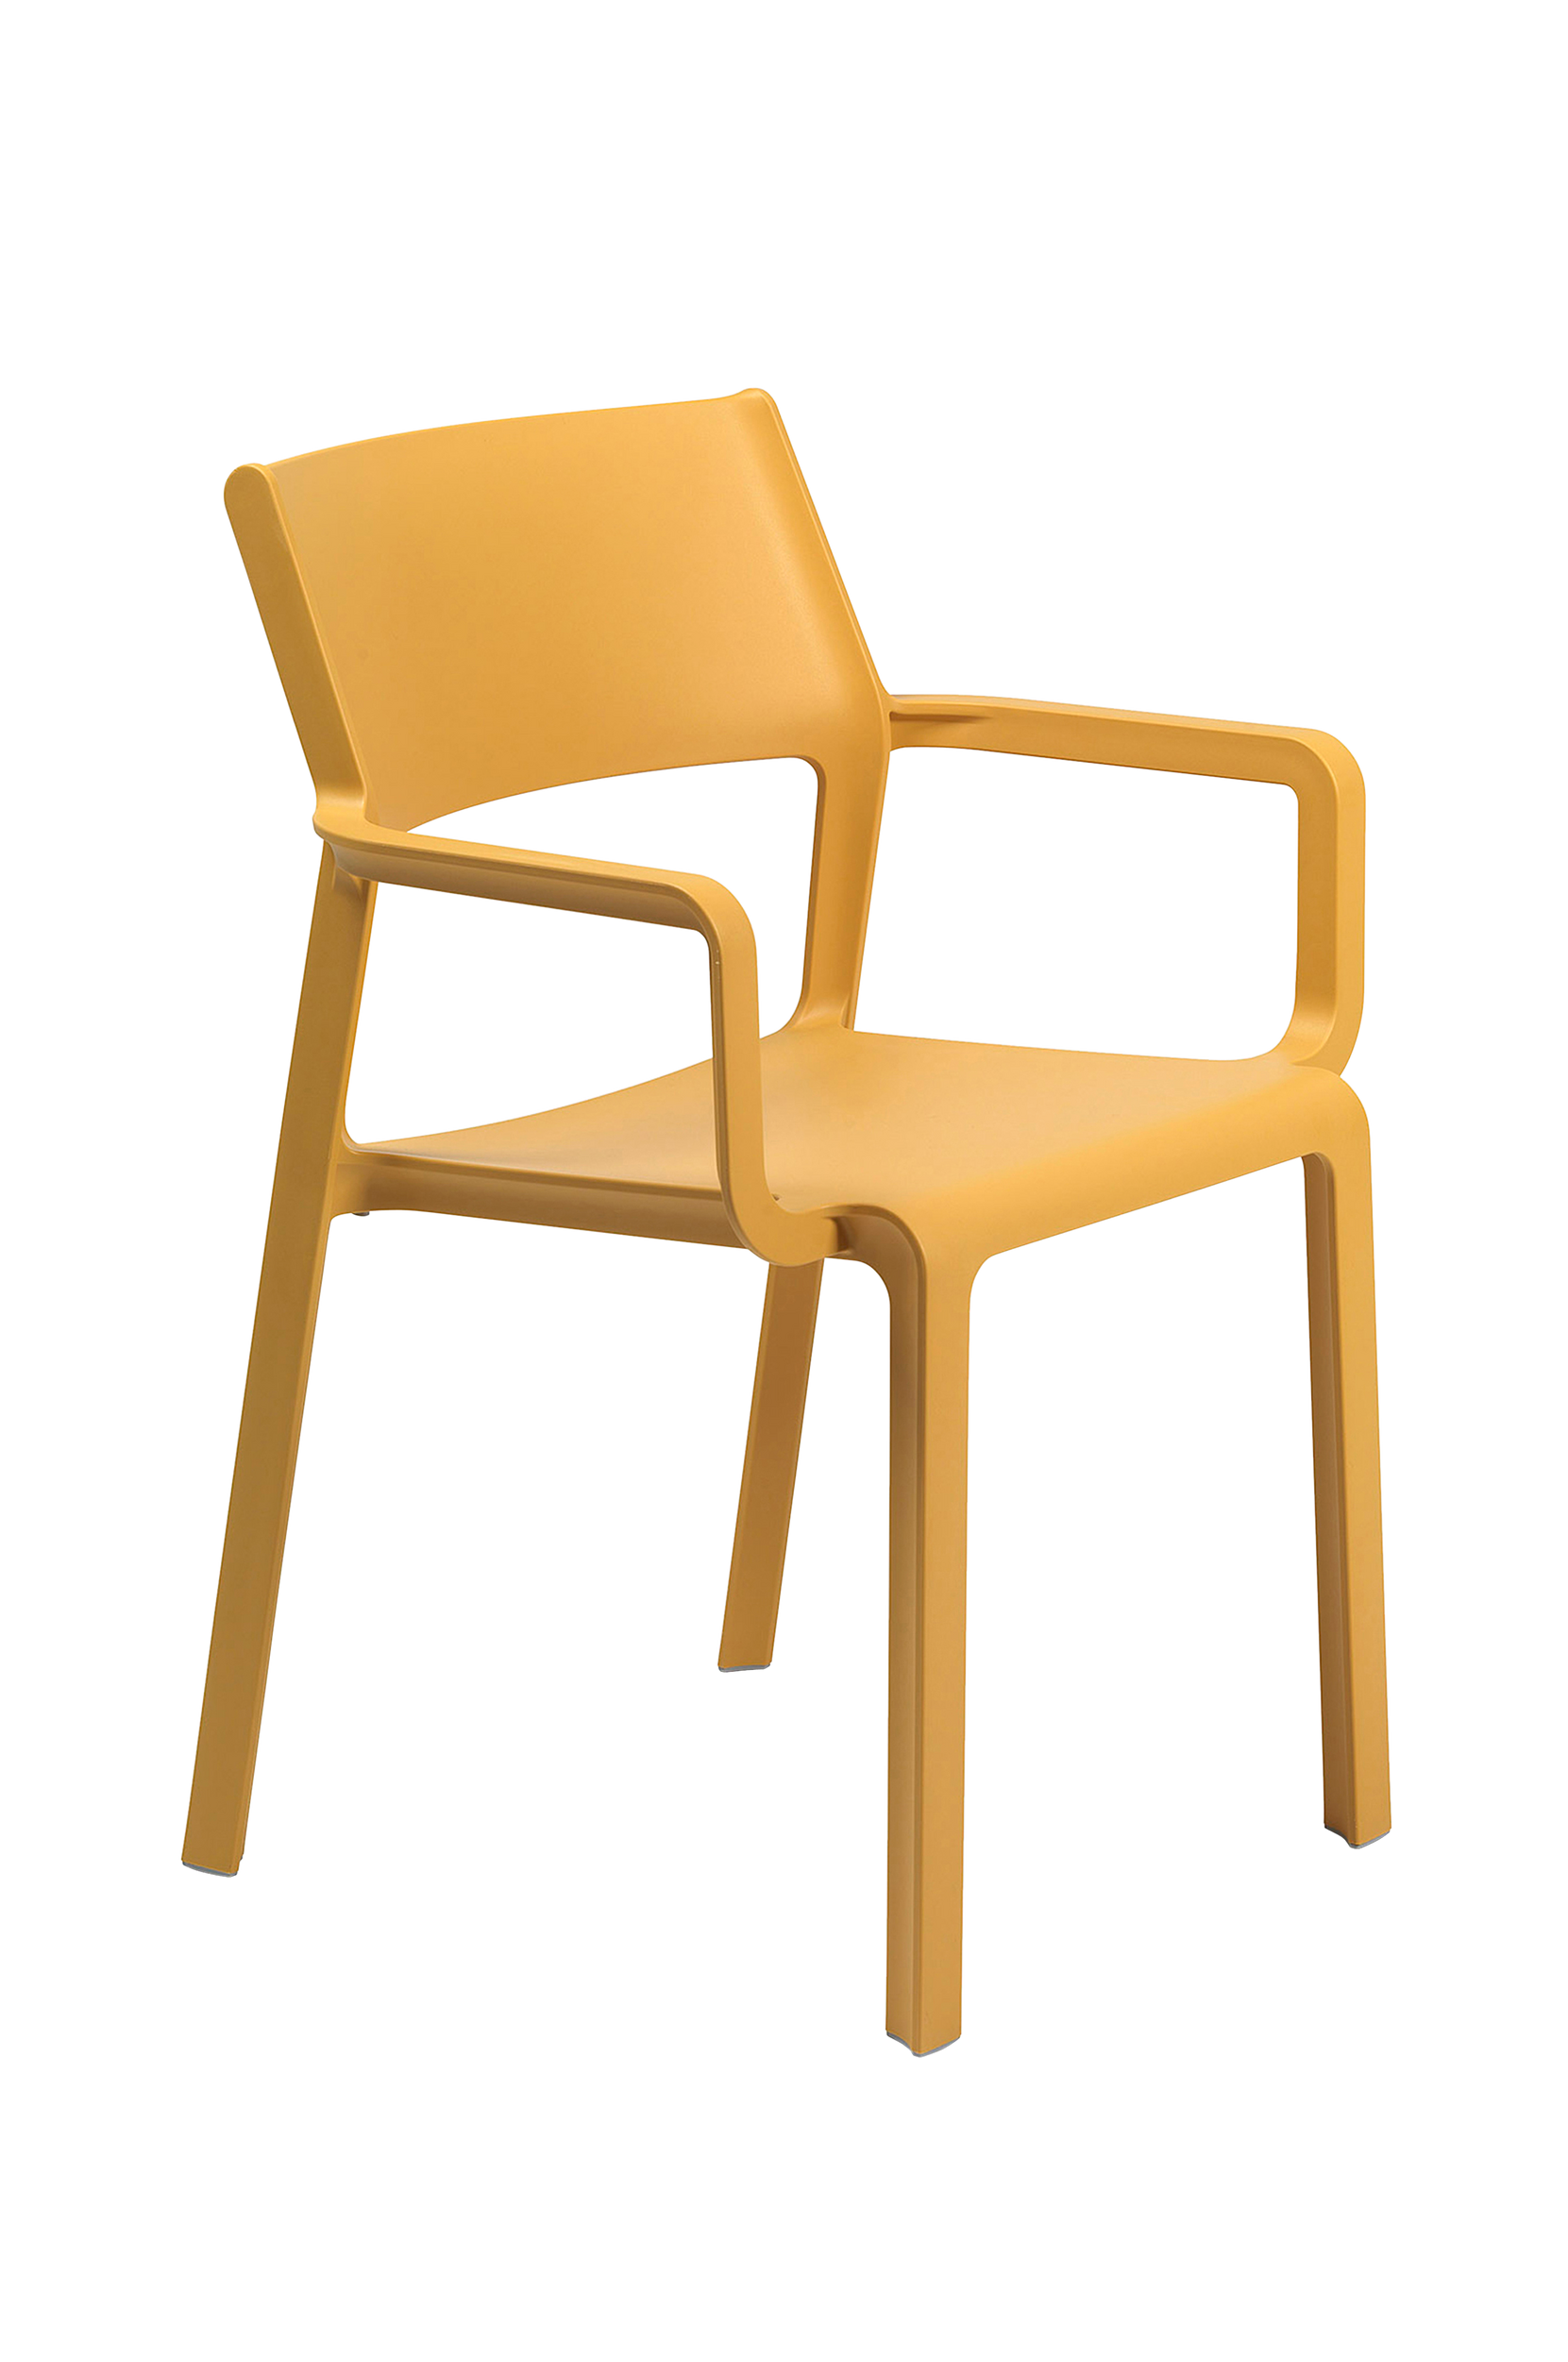 Käsinojalliset tuolit Trill, 6/pakk., Brafab